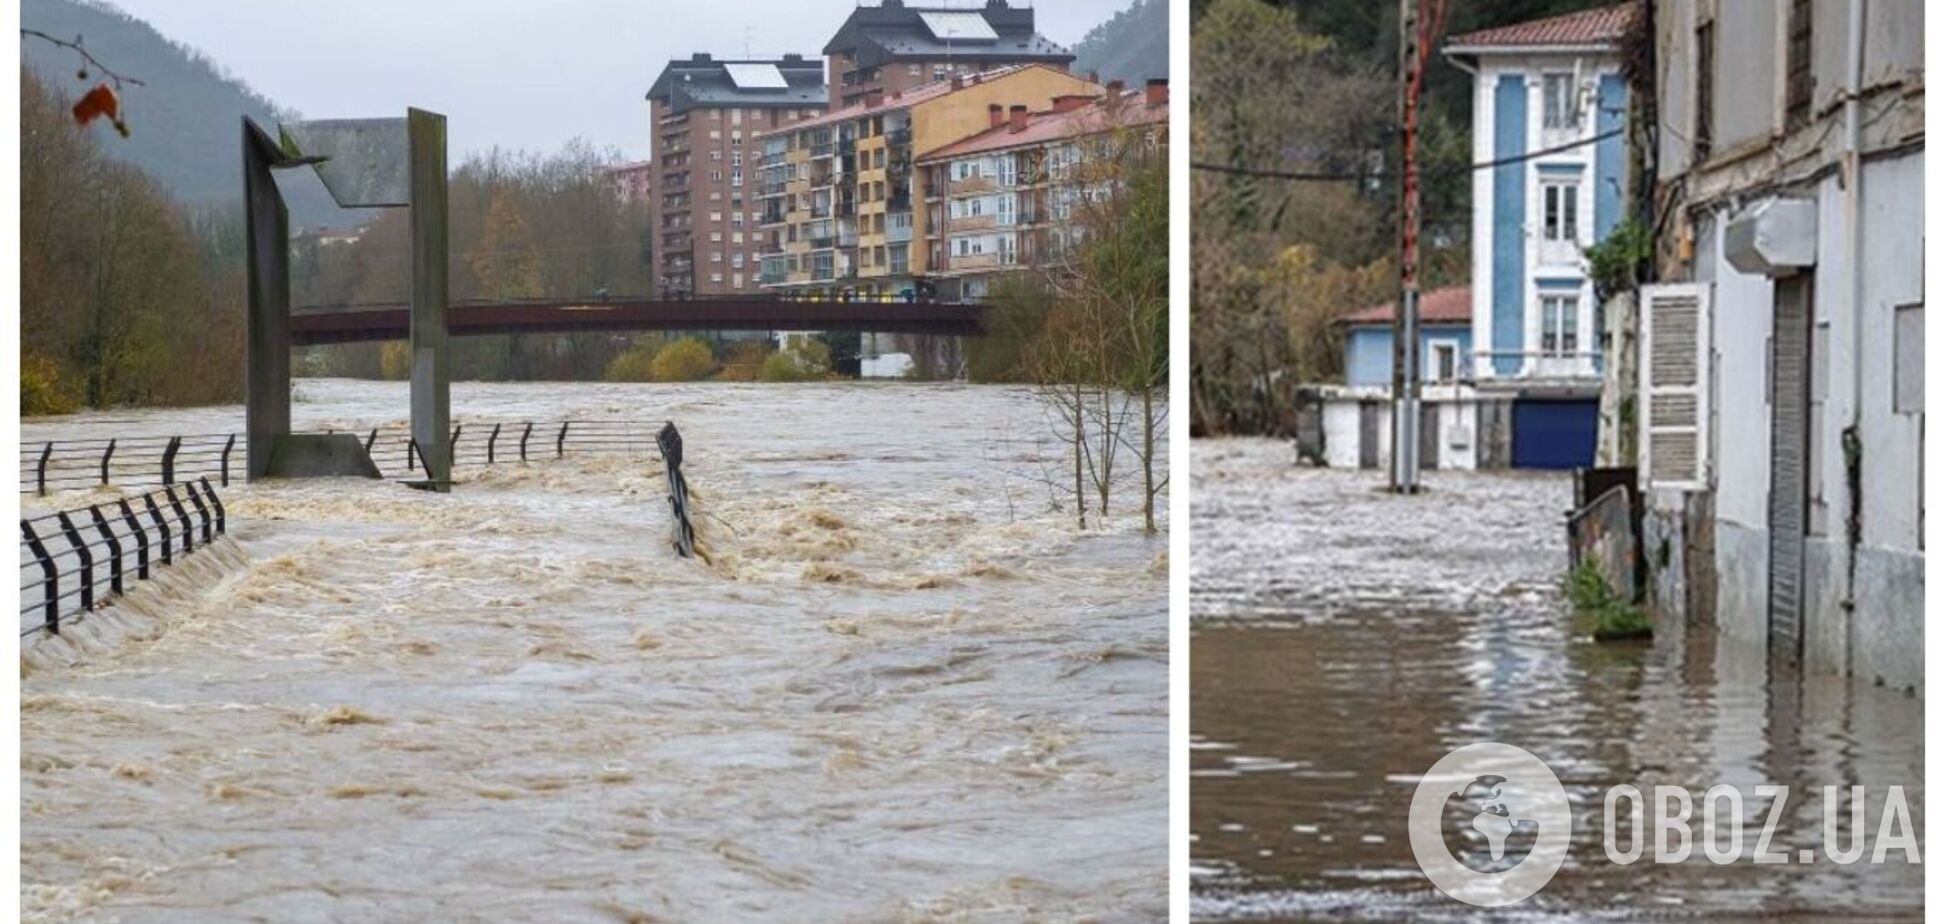 Іспанію накрили сильні зливи, під воду пішли цілі міста: є жертва. Фото і відео